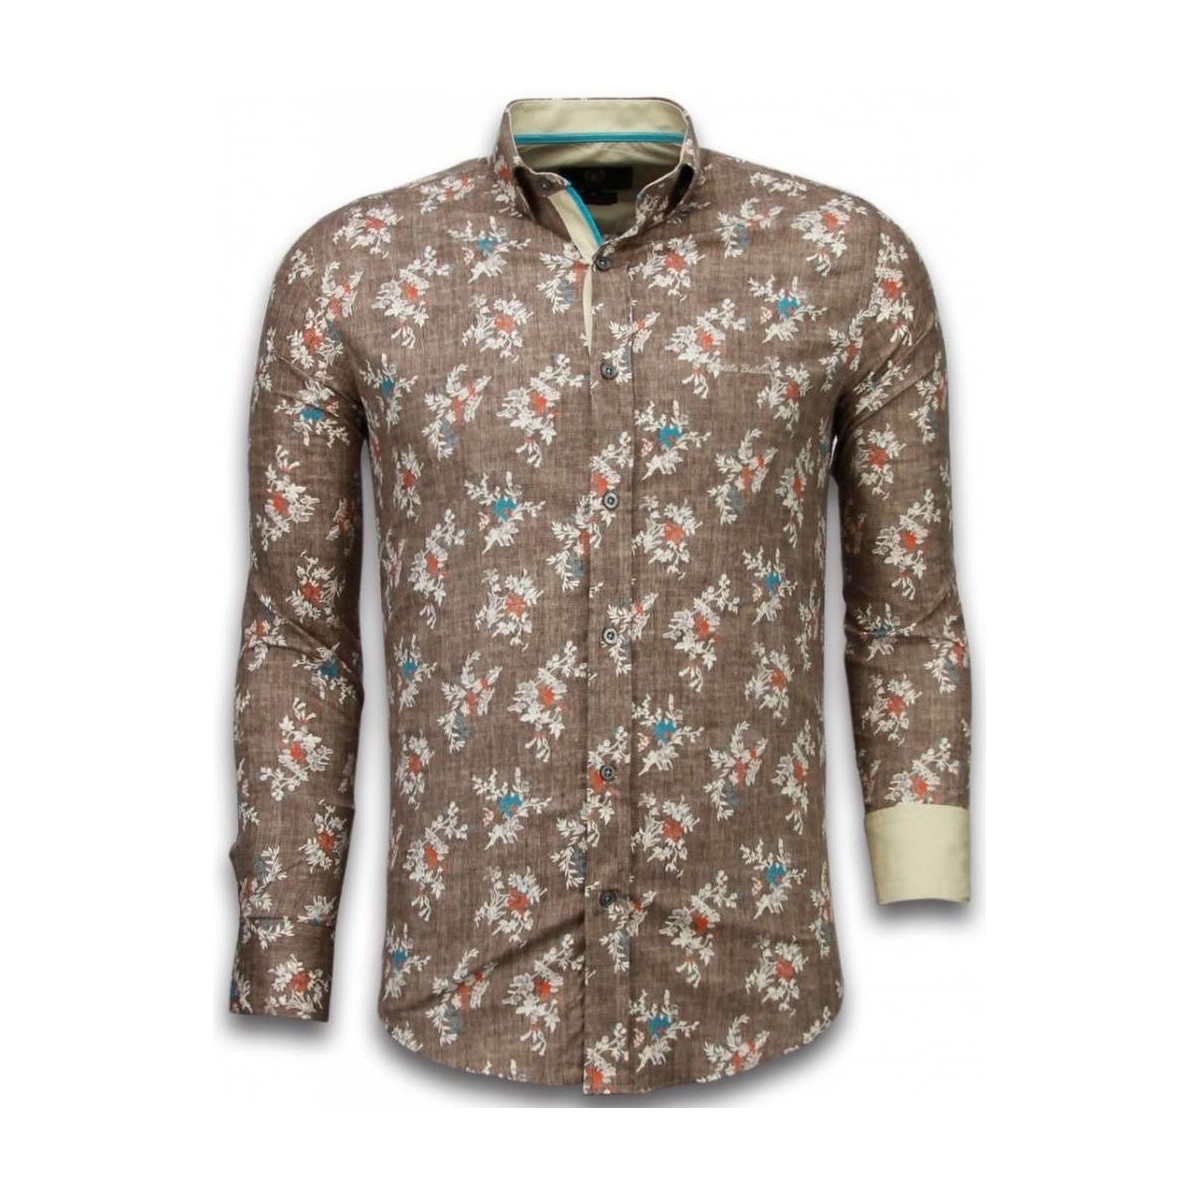 tekstylia Męskie Koszule z długim rękawem Tony Backer 45061544 Brązowy